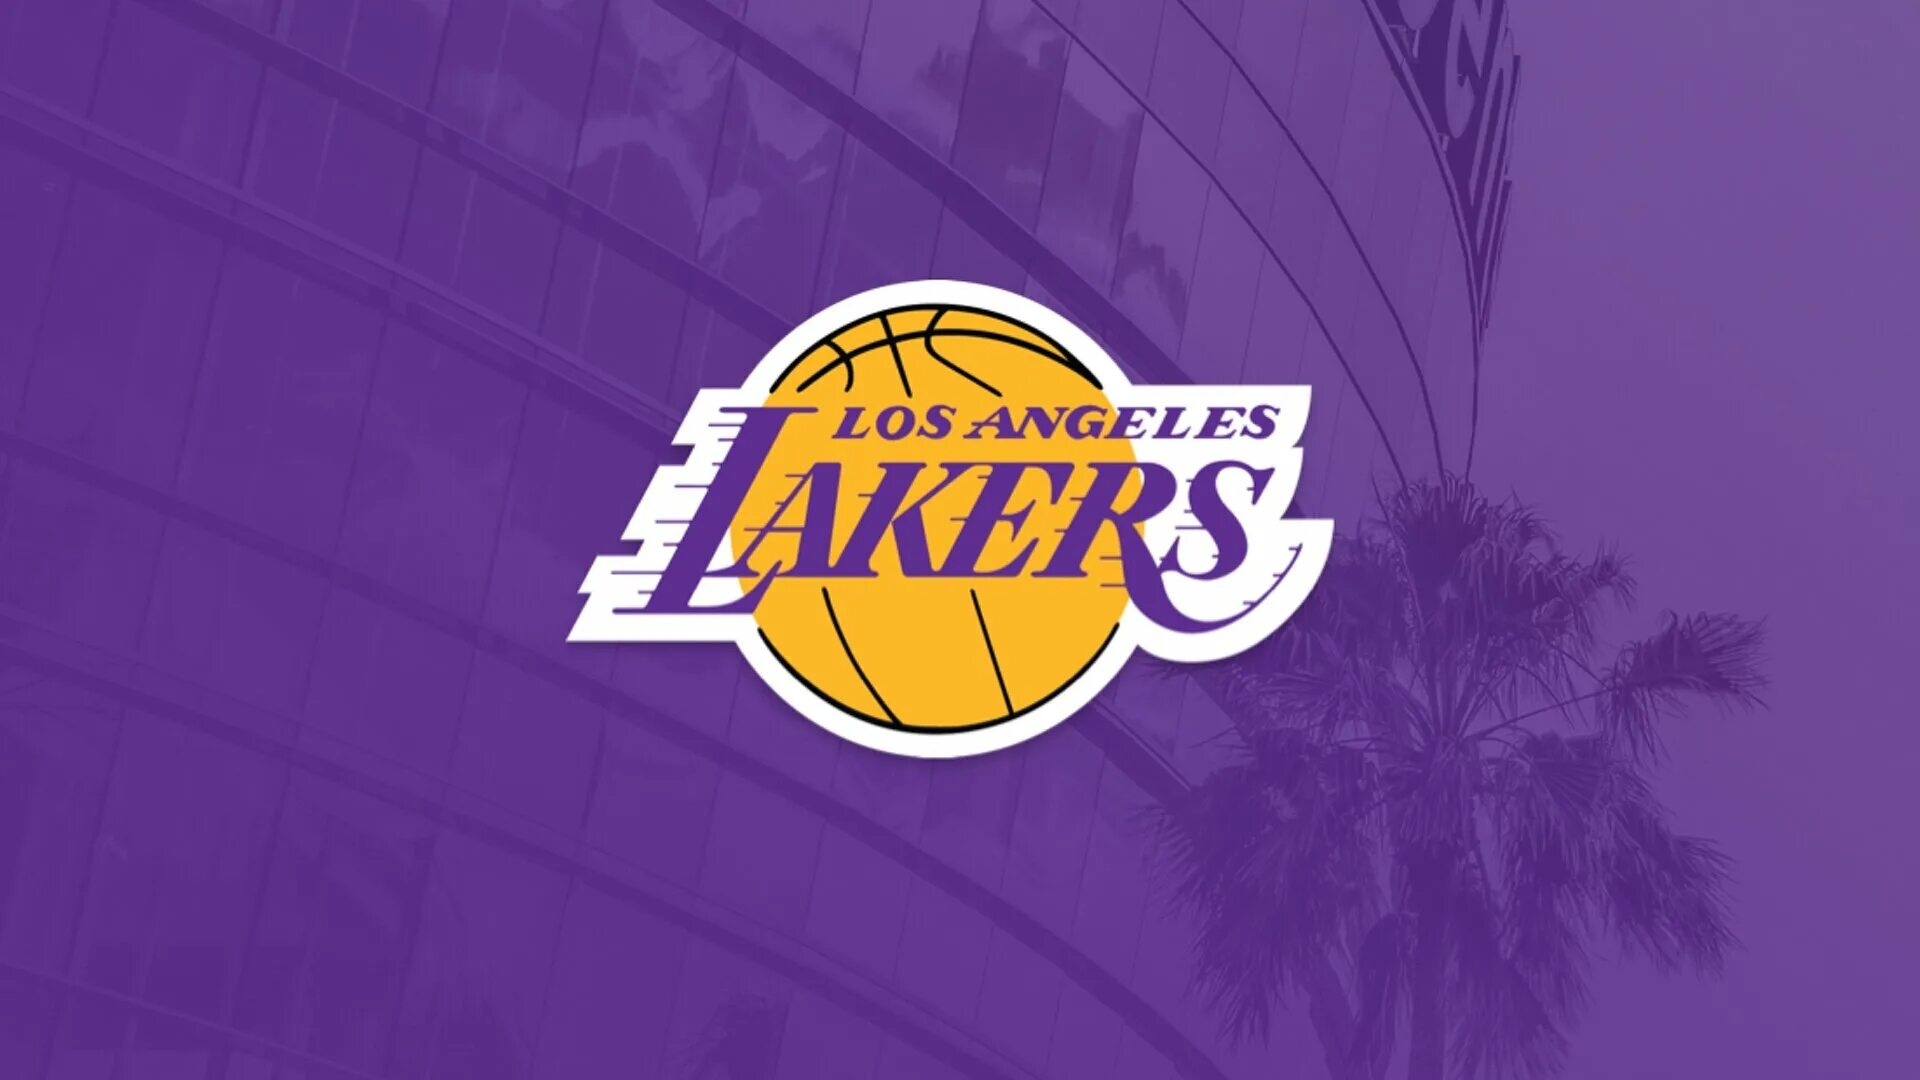 La lakers. Баскетбольная команда Лос Анджелес. Лос-Анджелес Лейкерс. Баскетбольная команда Лейкерс логотип. Баскетбольная команда Лос Анджелес Лейкерс.